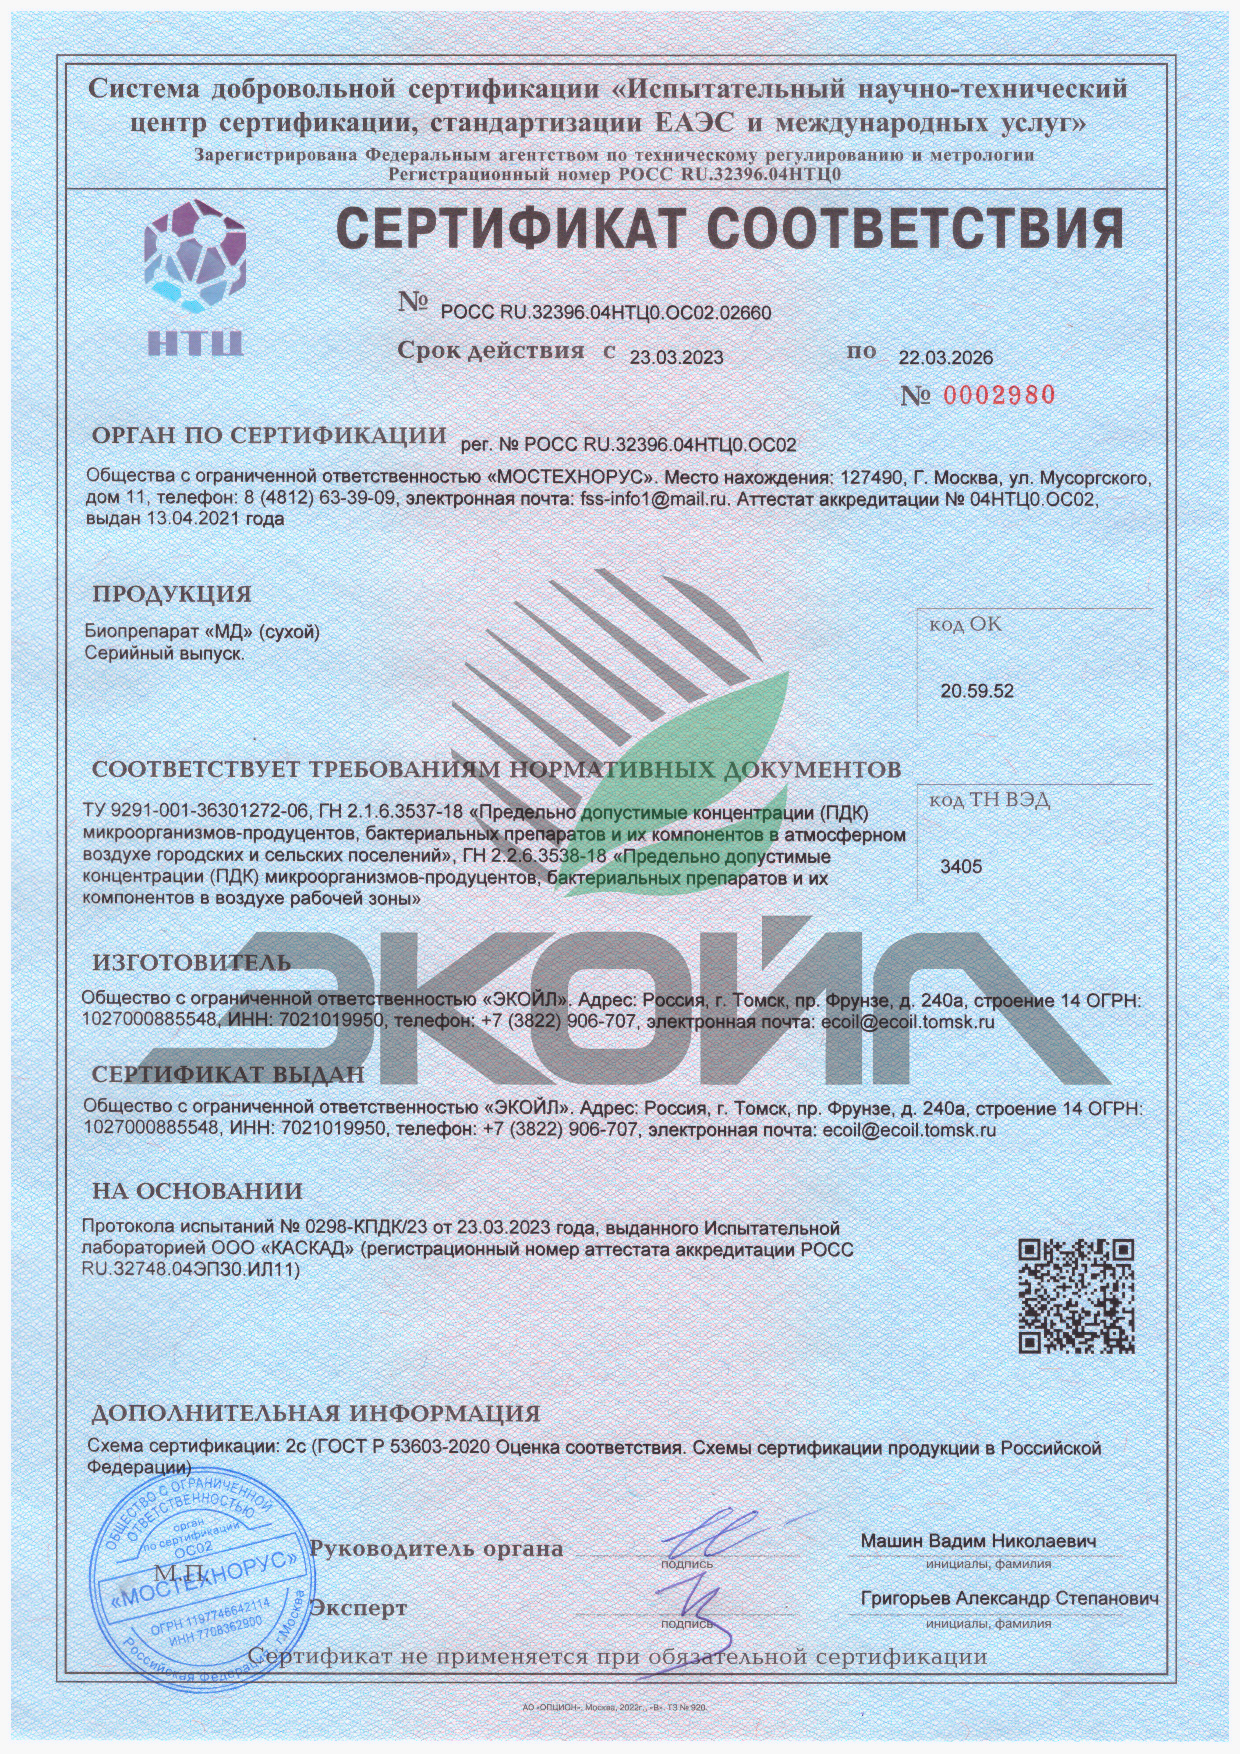 Сертификат соответствия ТУ - Биопрепарат "МД" (сухой)